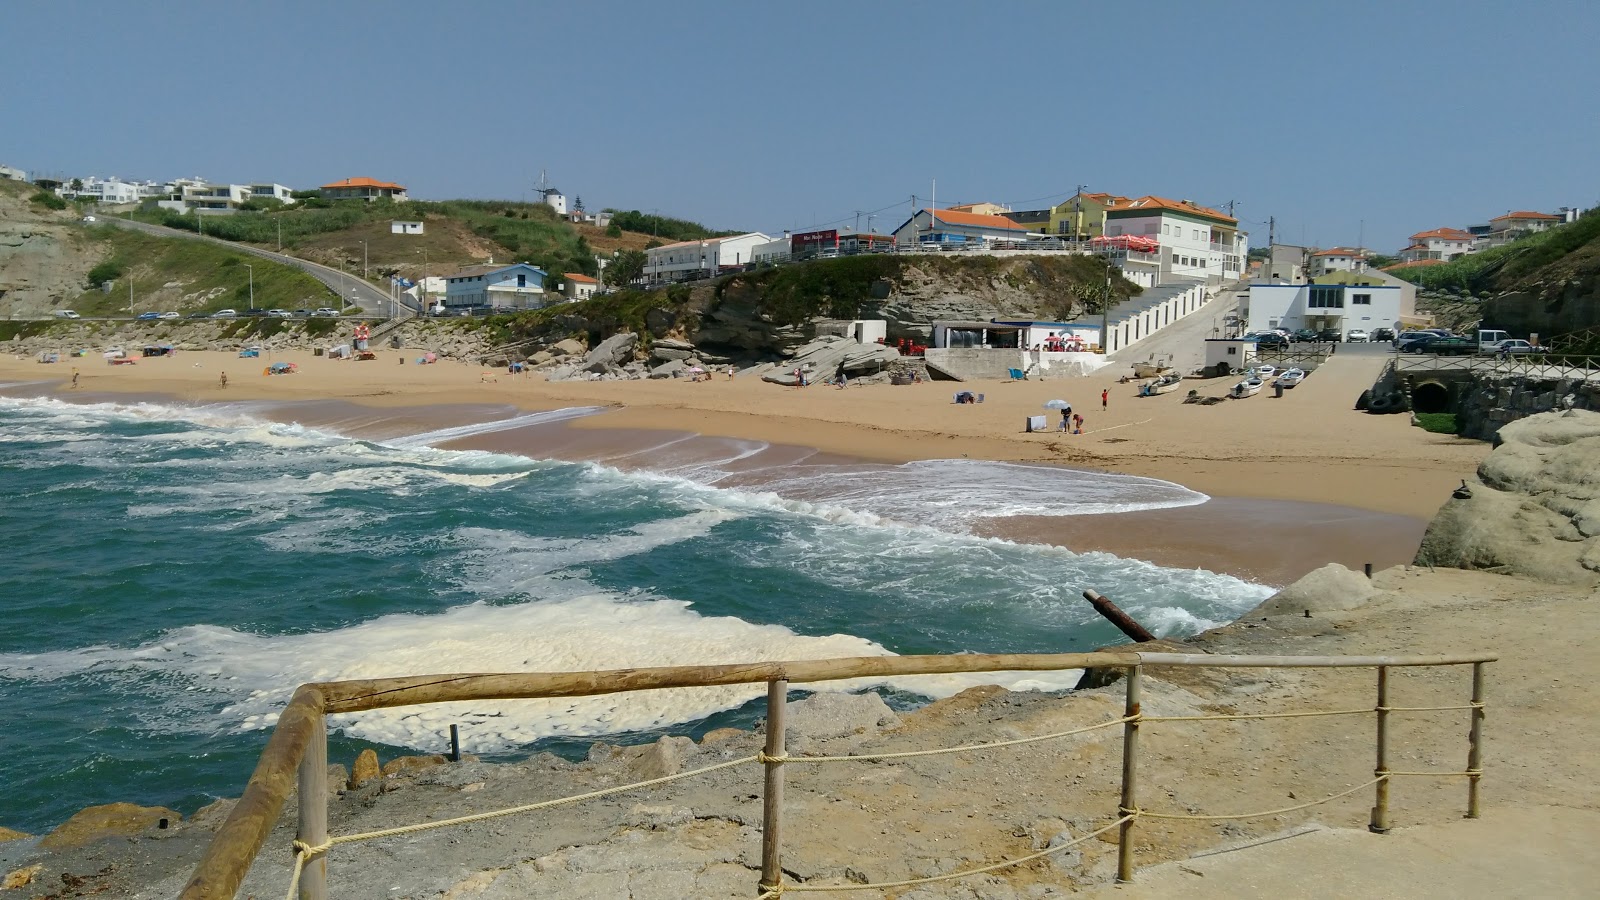 Photo of Praia de Porto Dinheiro backed by cliffs